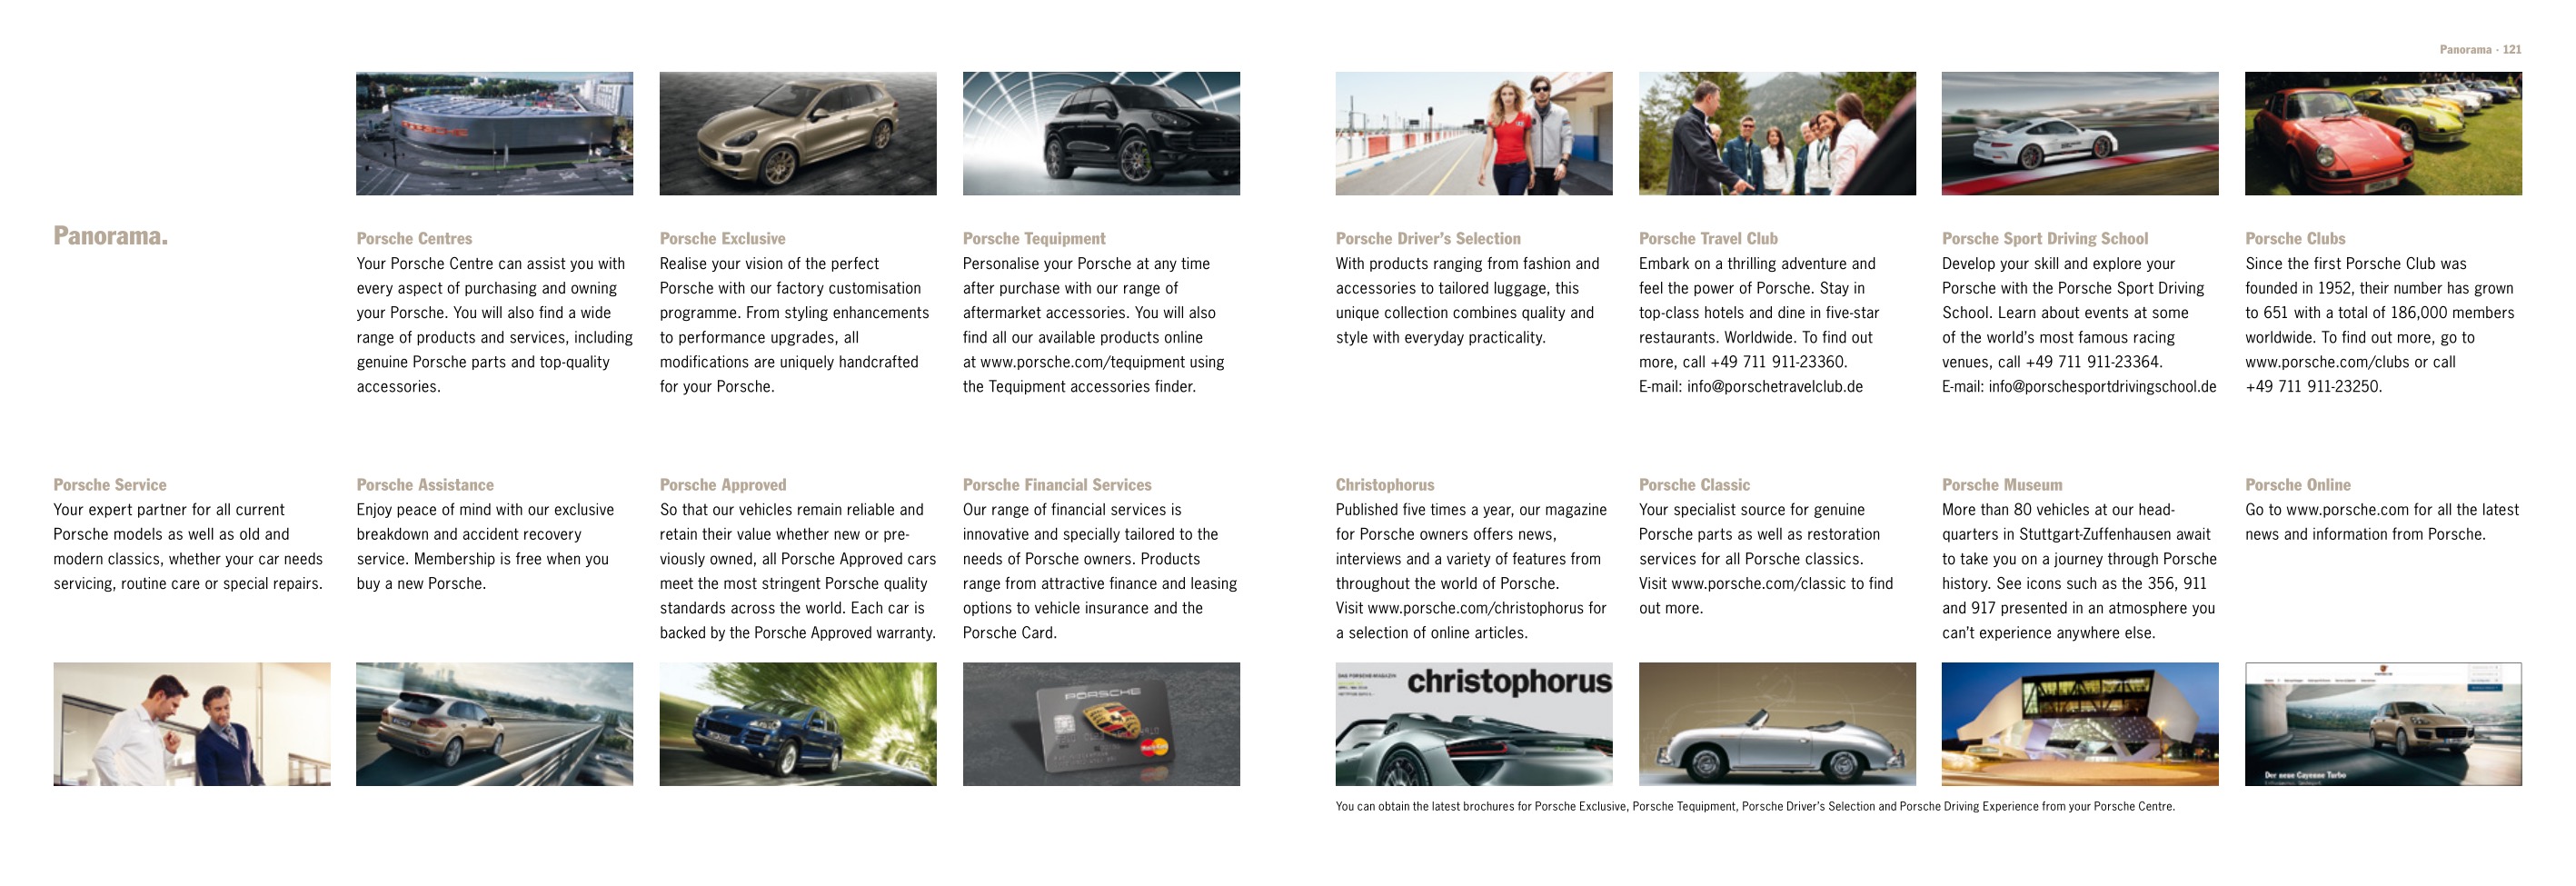 2015 Porsche Cayenne Brochure Page 37